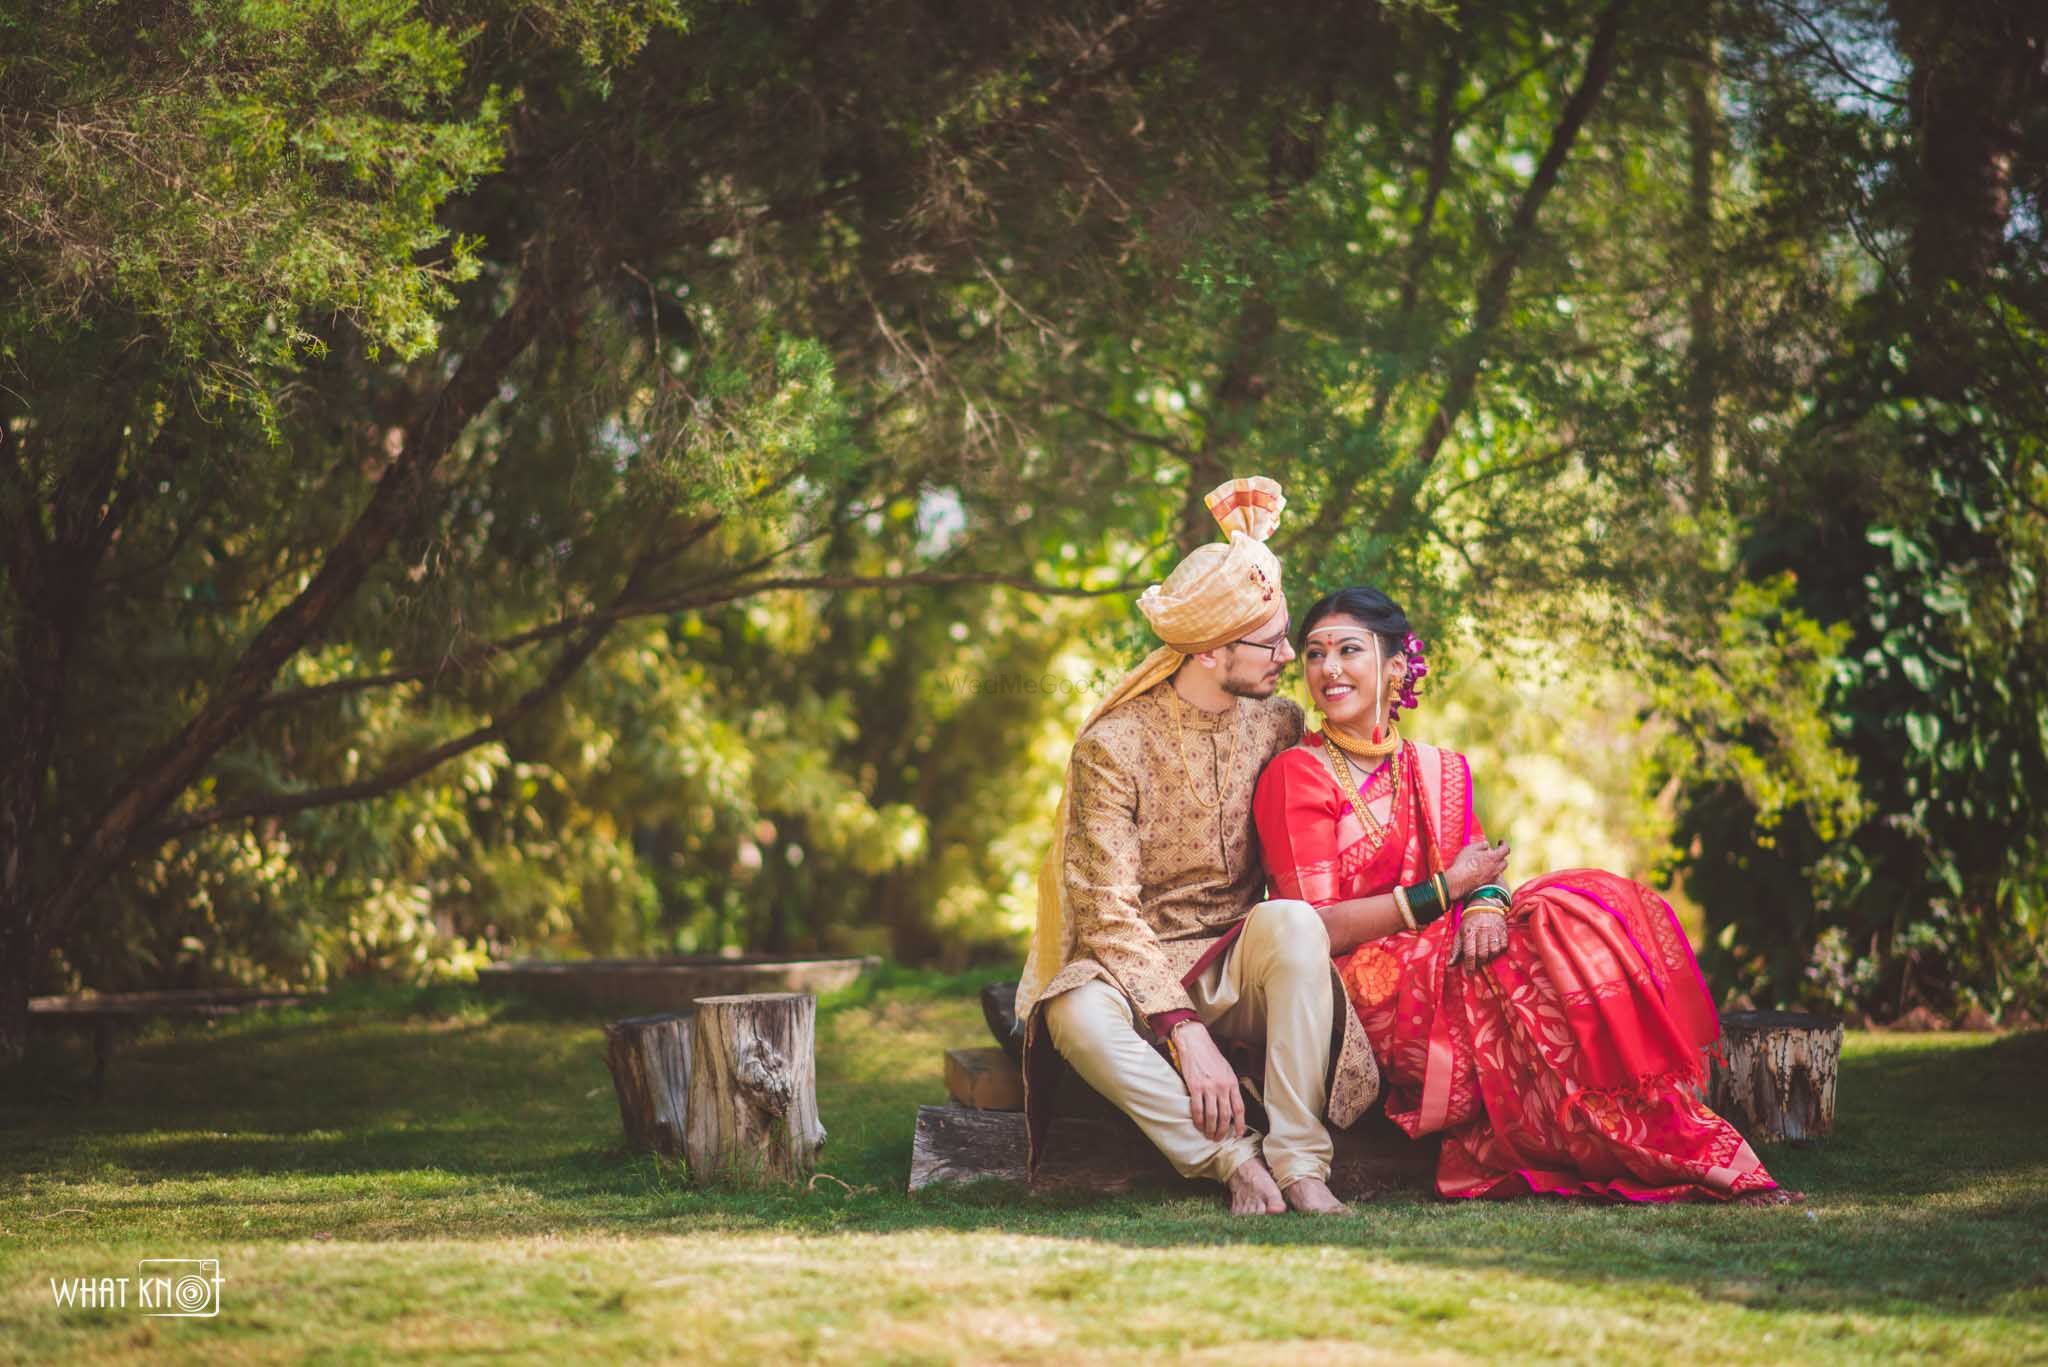 Maharashtrian Wedding Couple Candid Photography Poses - YouTube